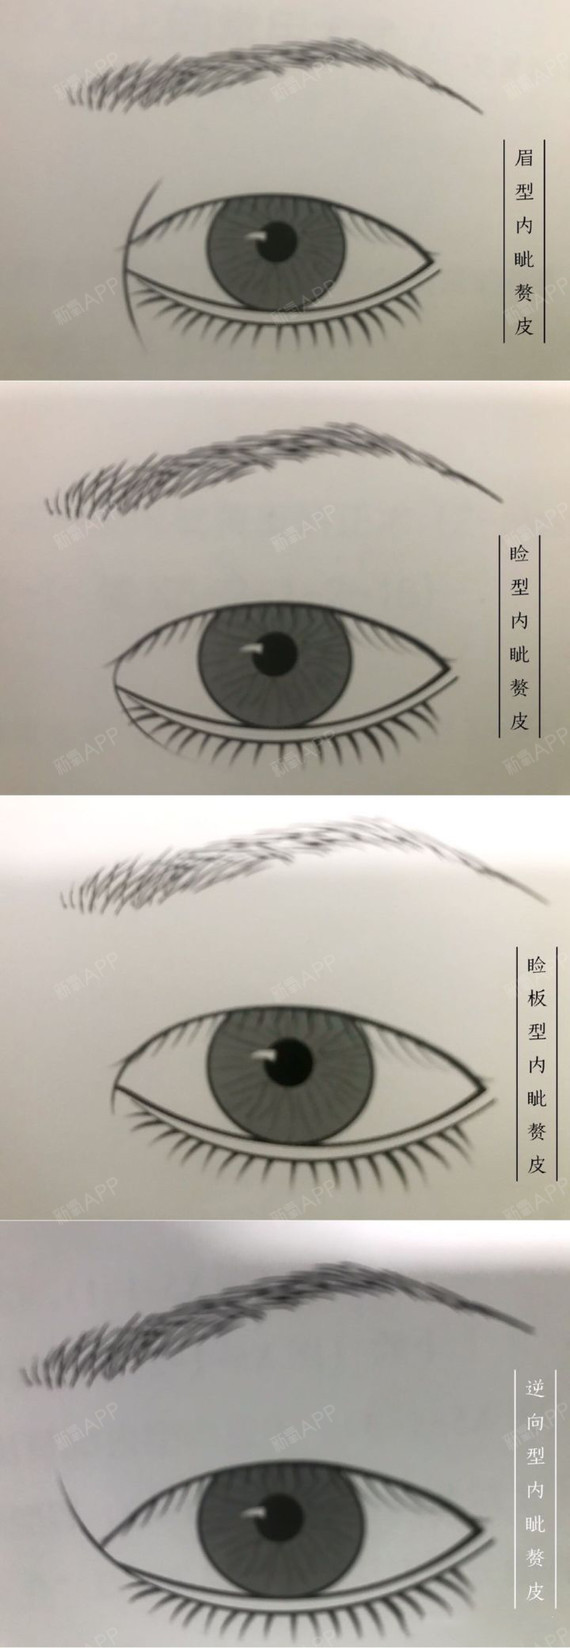 在睁眼时可以遮盖内眦泪阜的一部分或全部,是亚洲人眼睛的特征之一